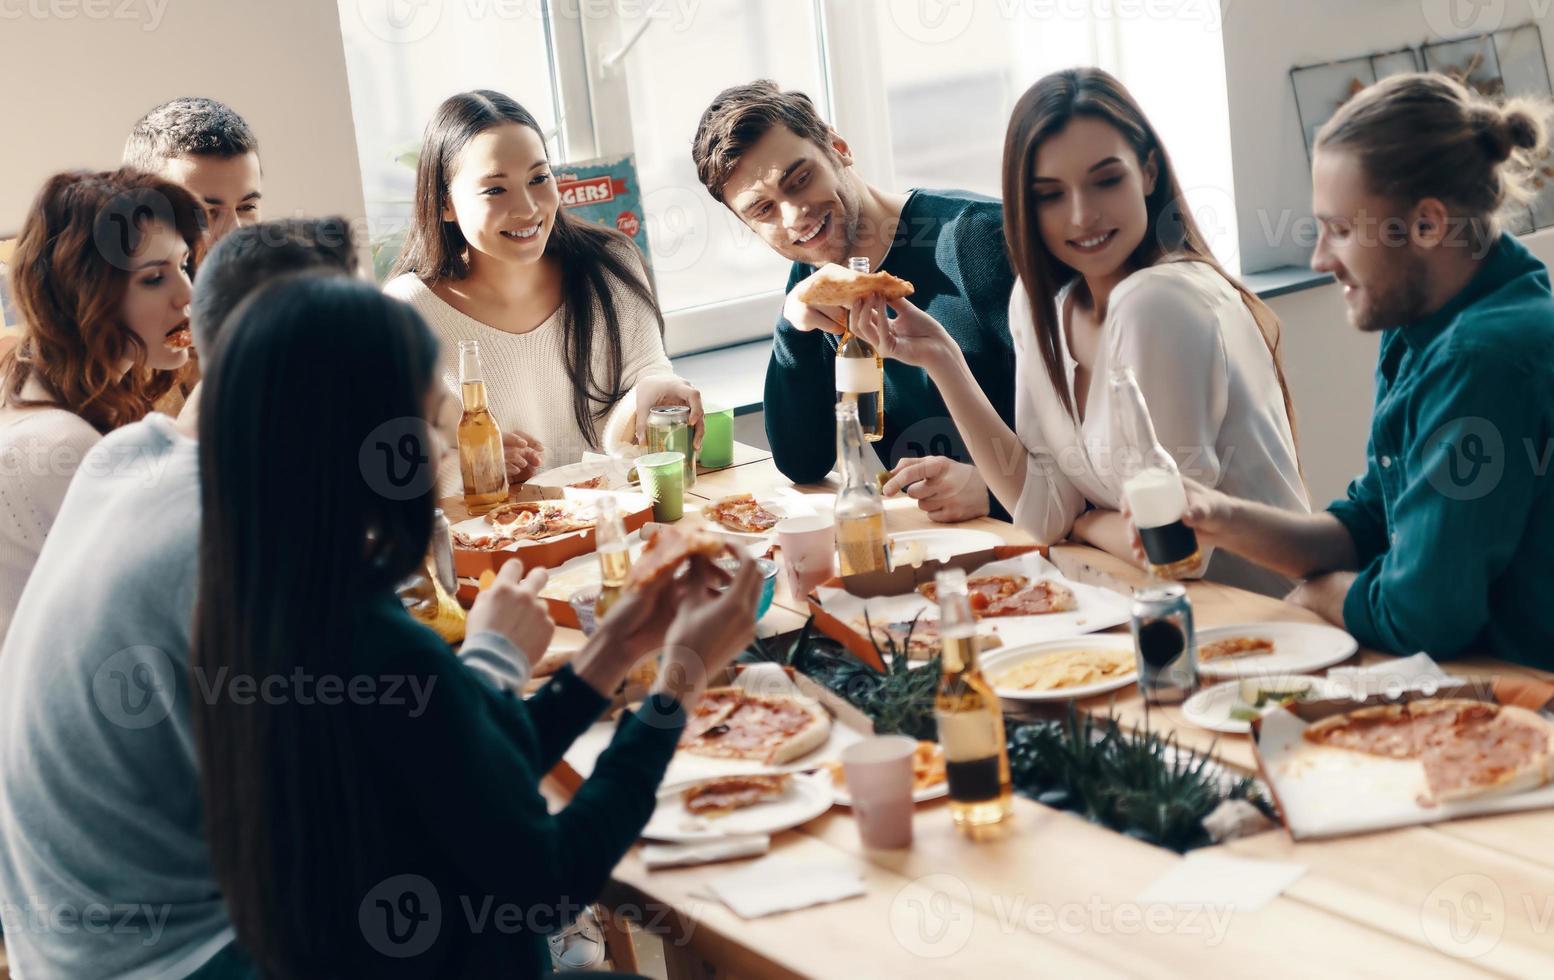 fiesta inolvidable. grupo de jóvenes con ropa informal comiendo pizza y sonriendo mientras cenan en el interior foto